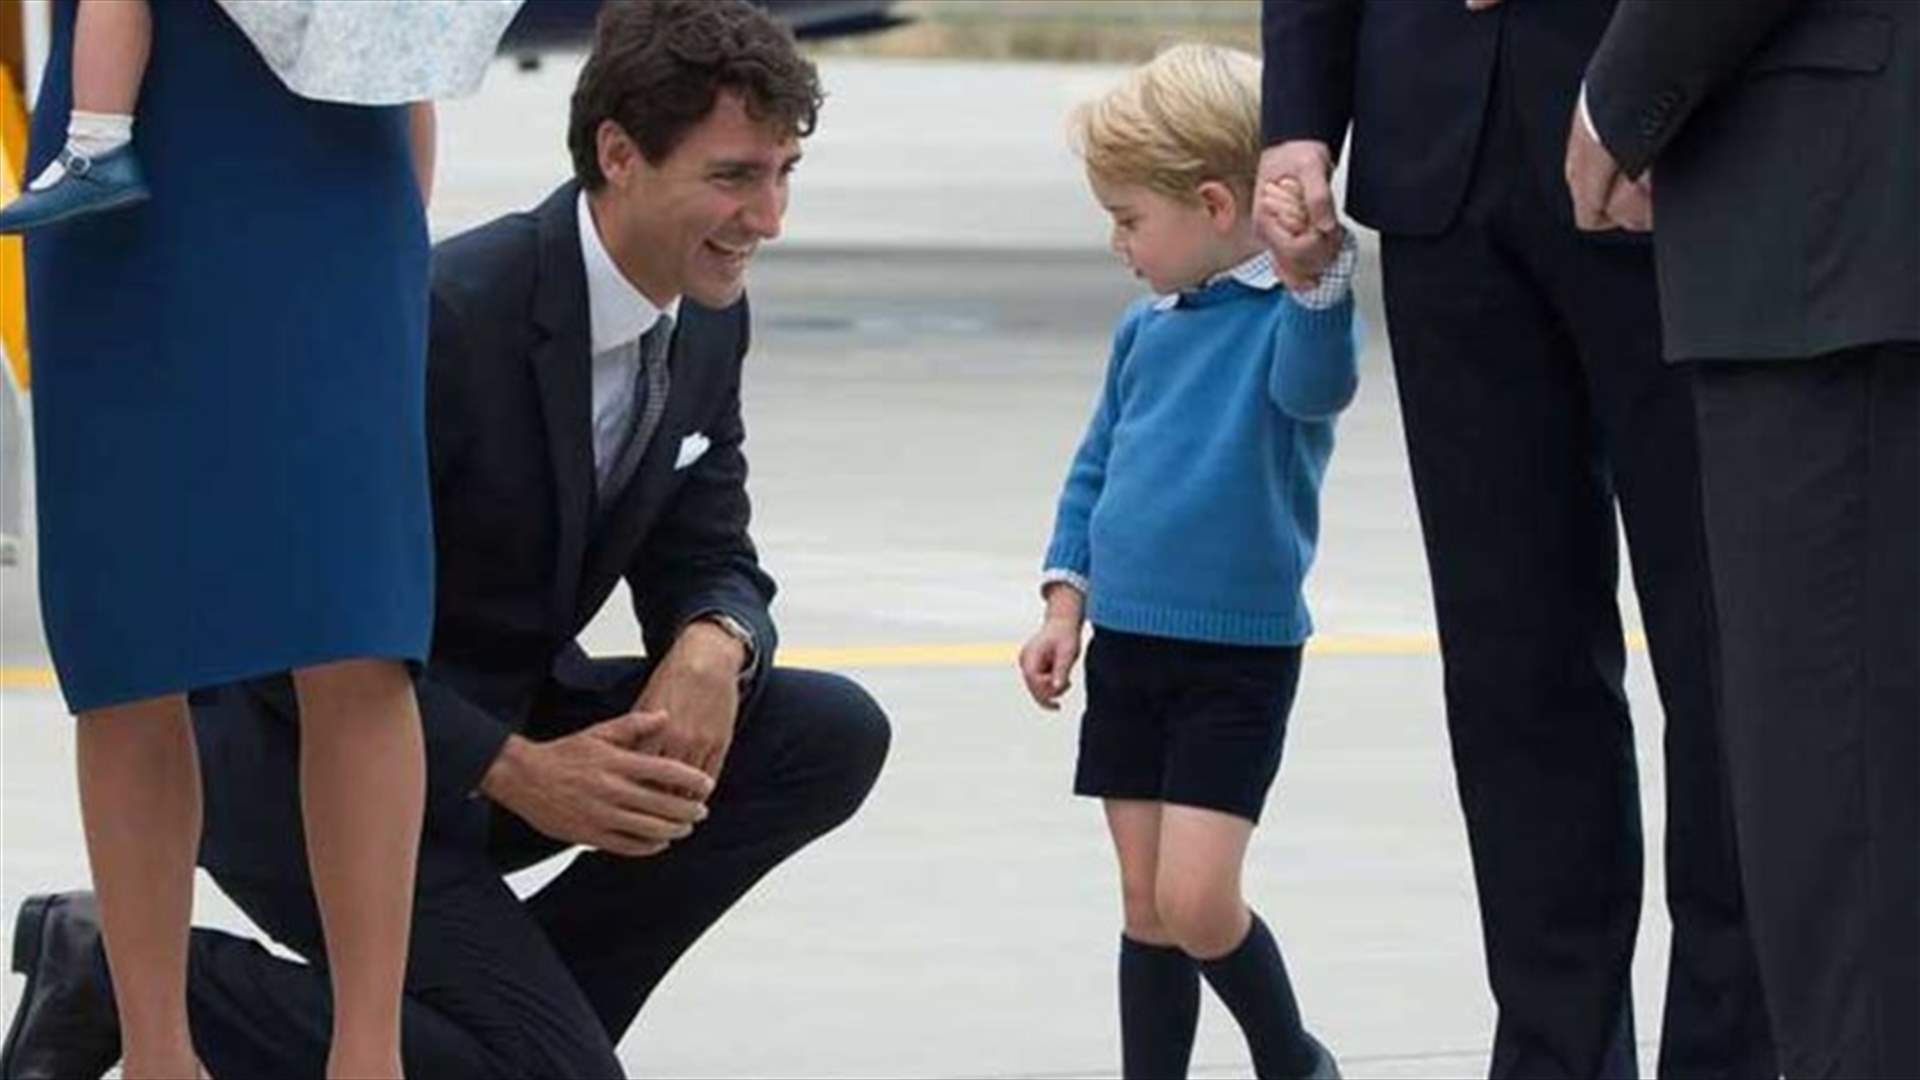 بالصورة: موقف محرج لرئيس وزراء كندا مع الأمير الصغير جورج